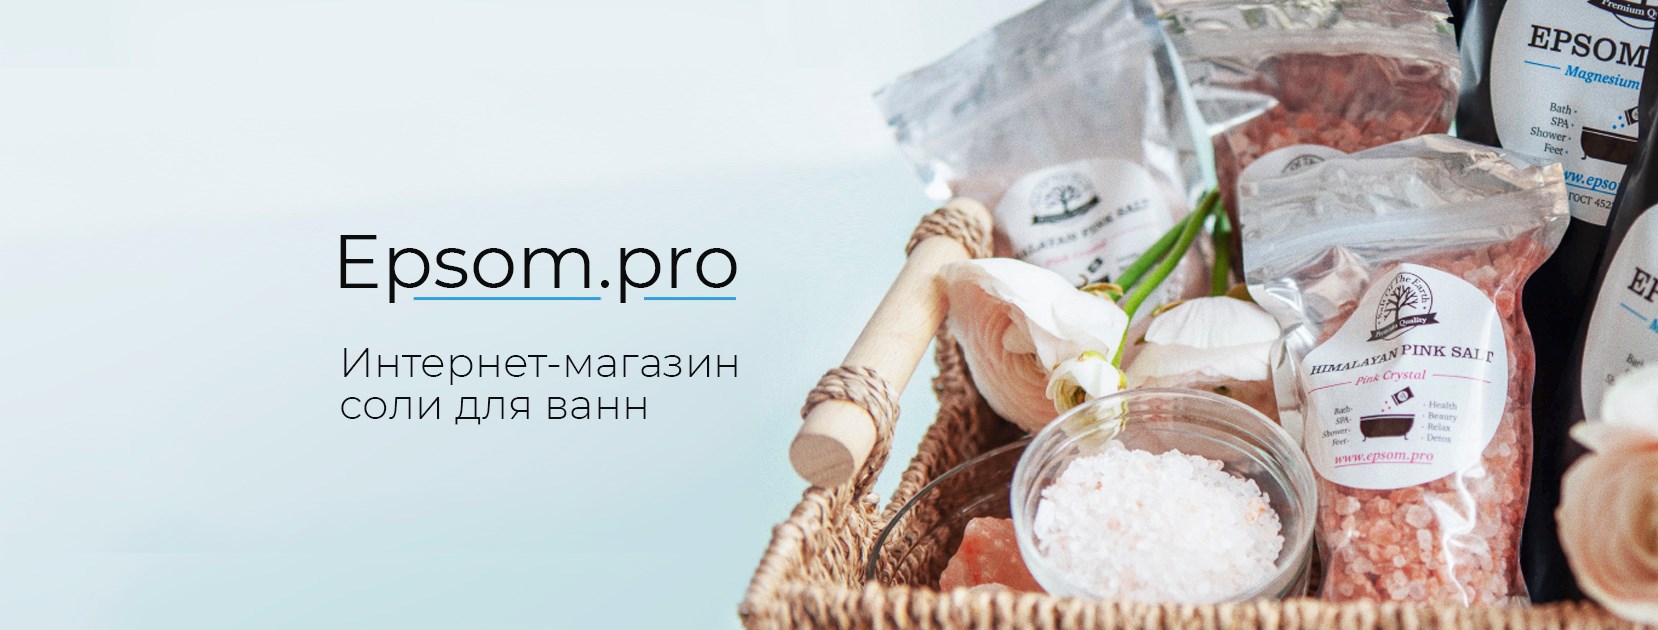 Подарок соль 1 кг к заказу от 3500 руб!